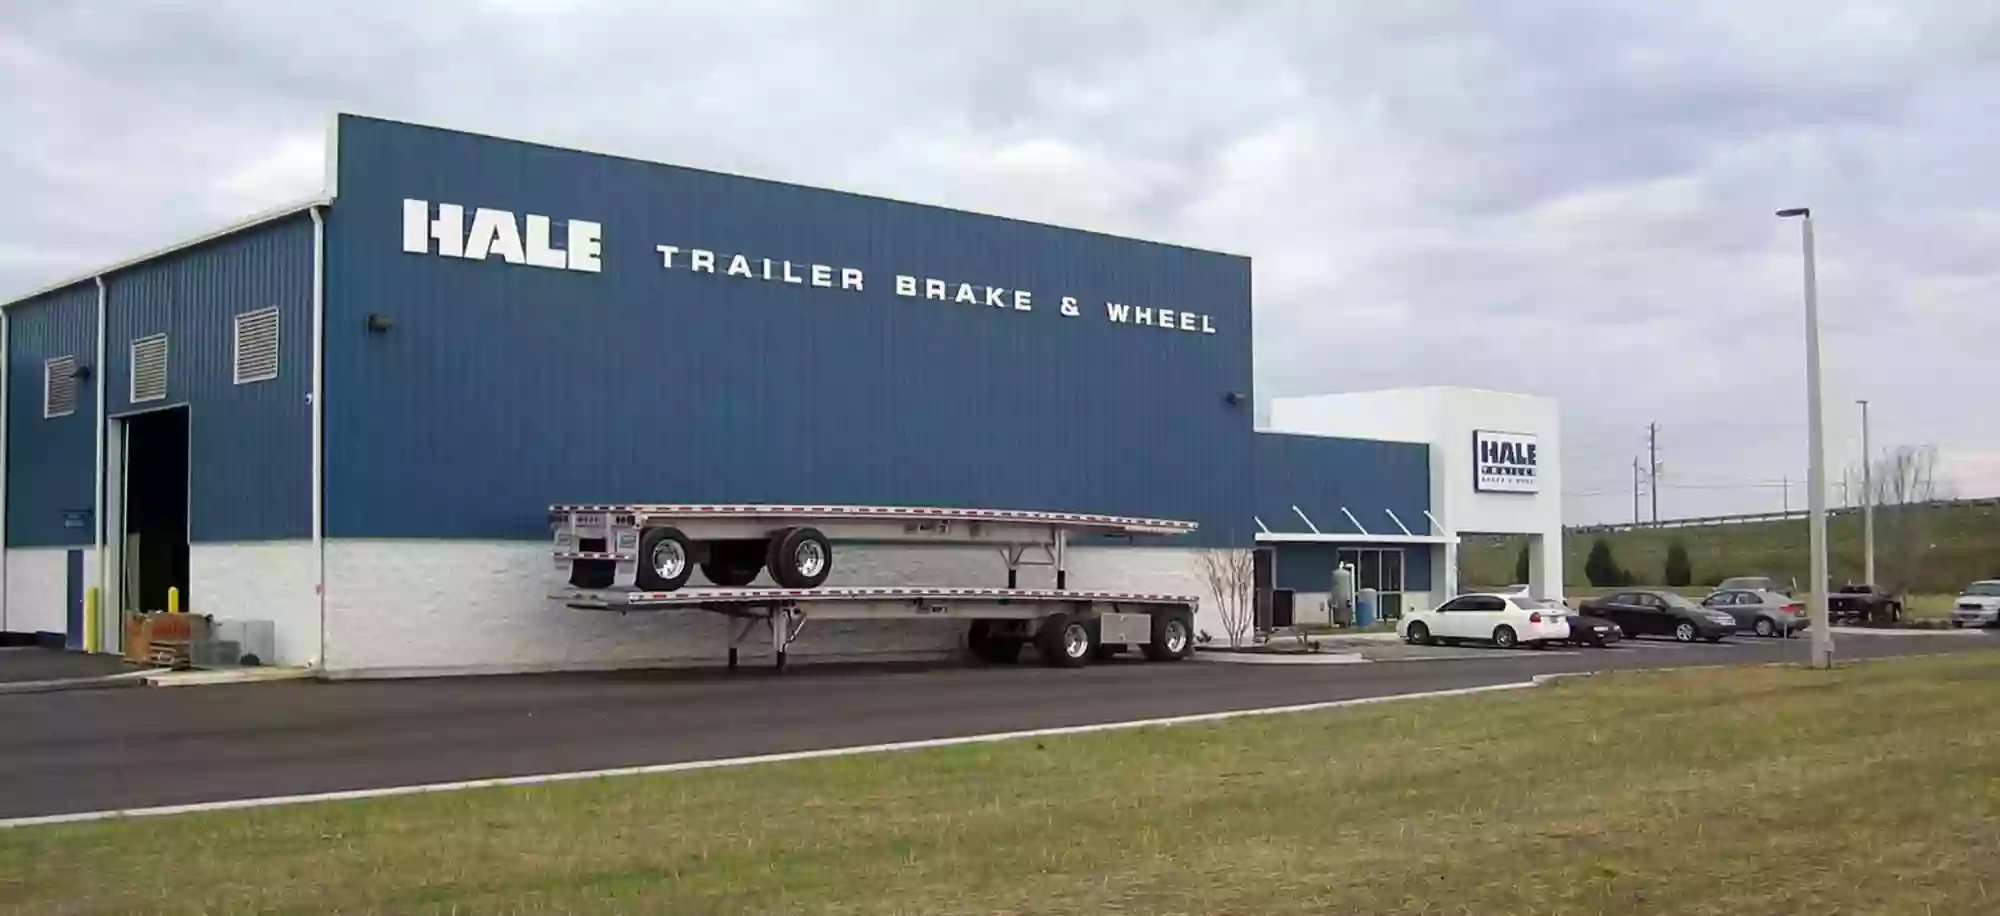 Hale Trailer Brake & Wheel - Jacksonville